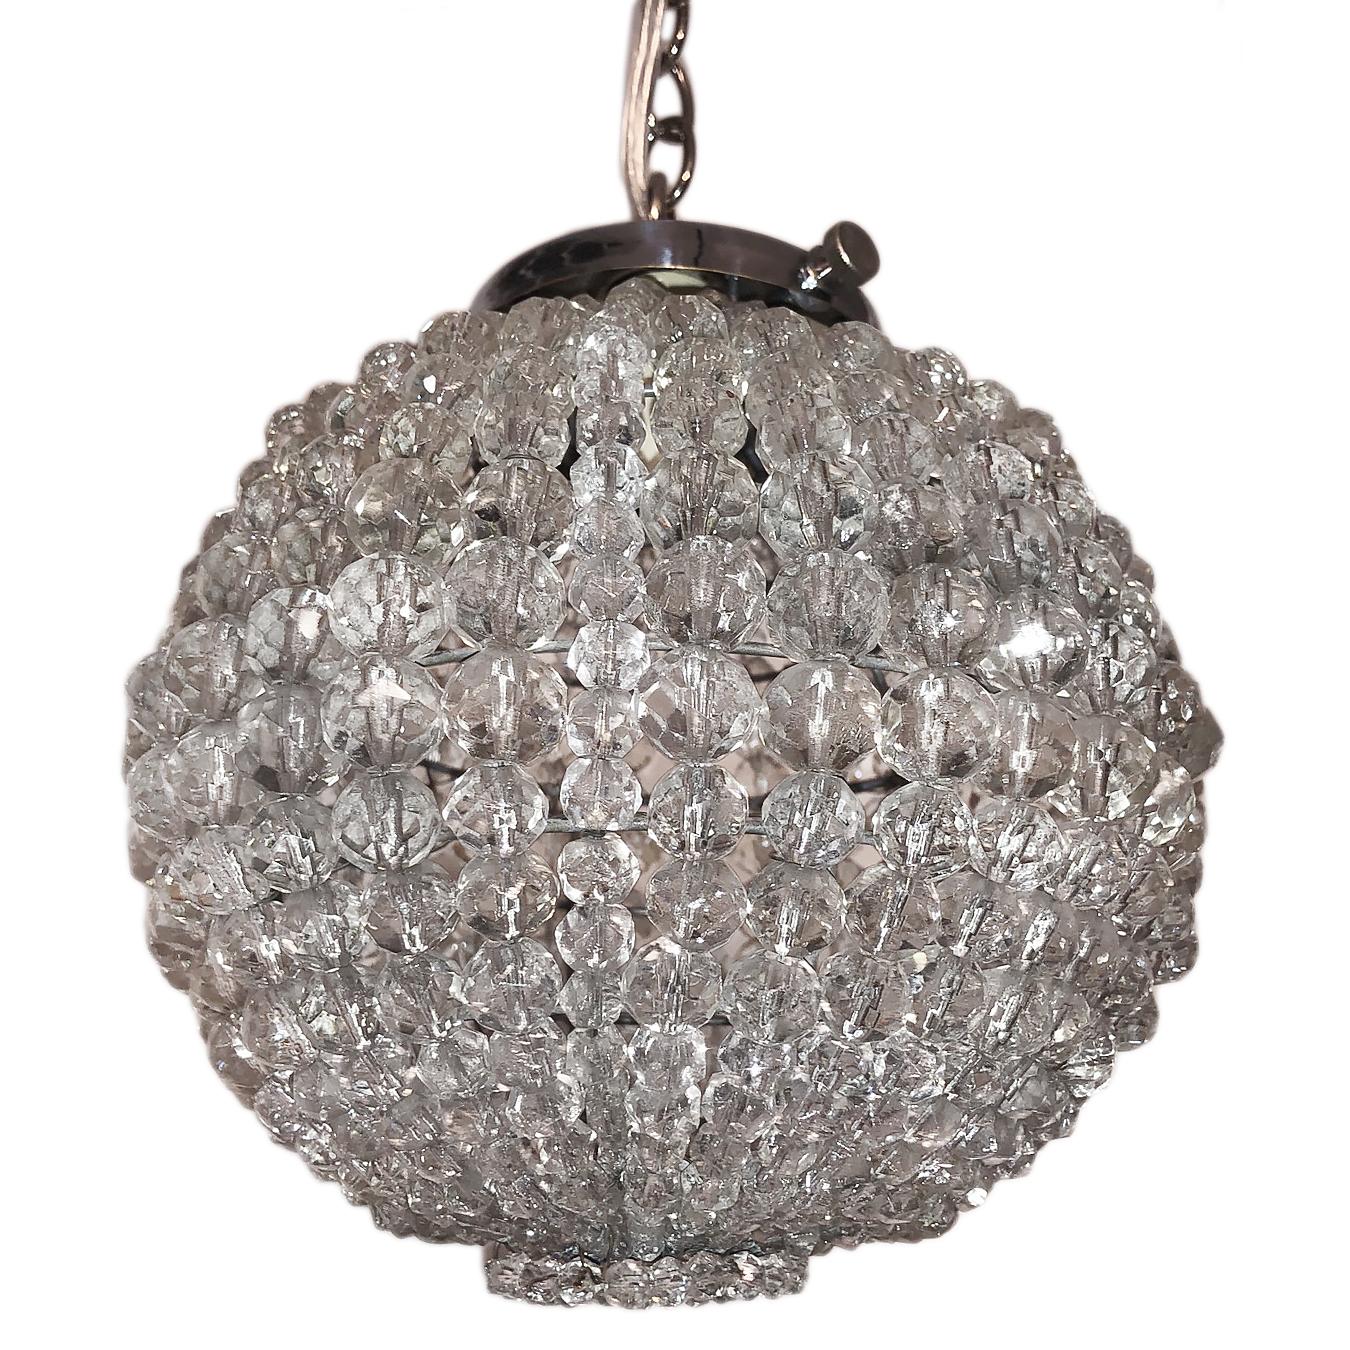 Lanterne à perles en cristal français des années 1940, avec quincaillerie nickelée.

Mesures :
Chute minimale de 10